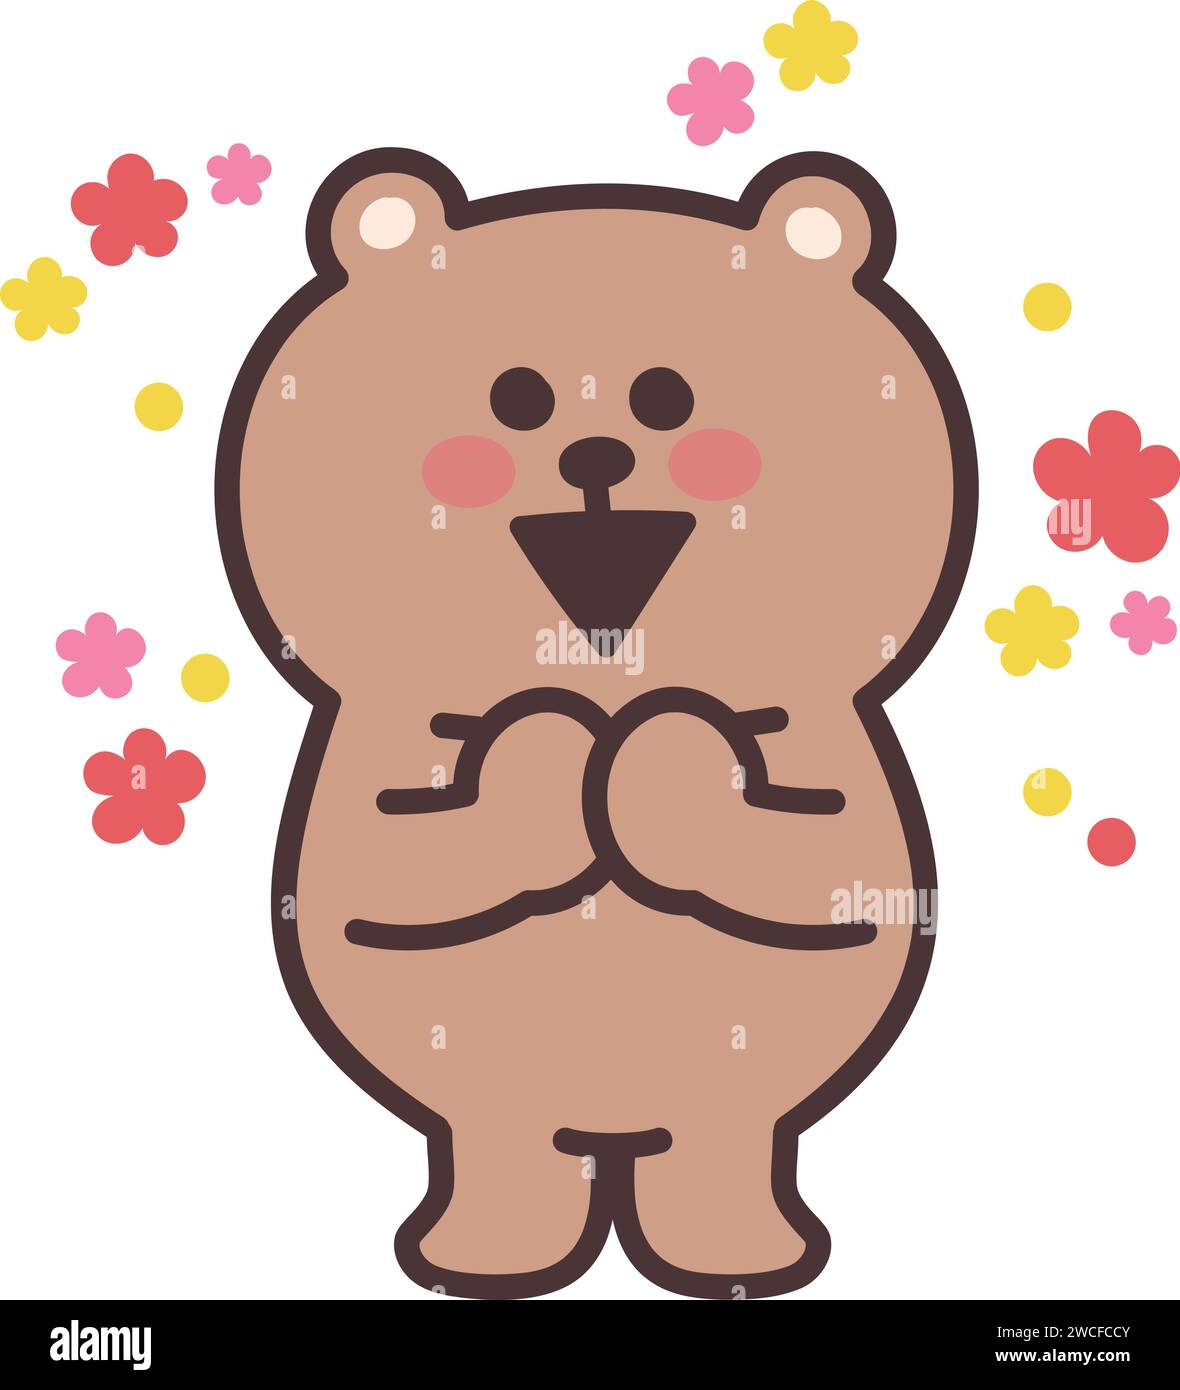 Erfreuen Sie sich an einem Cartoon-Teddybär mit Blumenkonfetti. Vektorabbildung isoliert auf einem transparenten Hintergrund. Stock Vektor